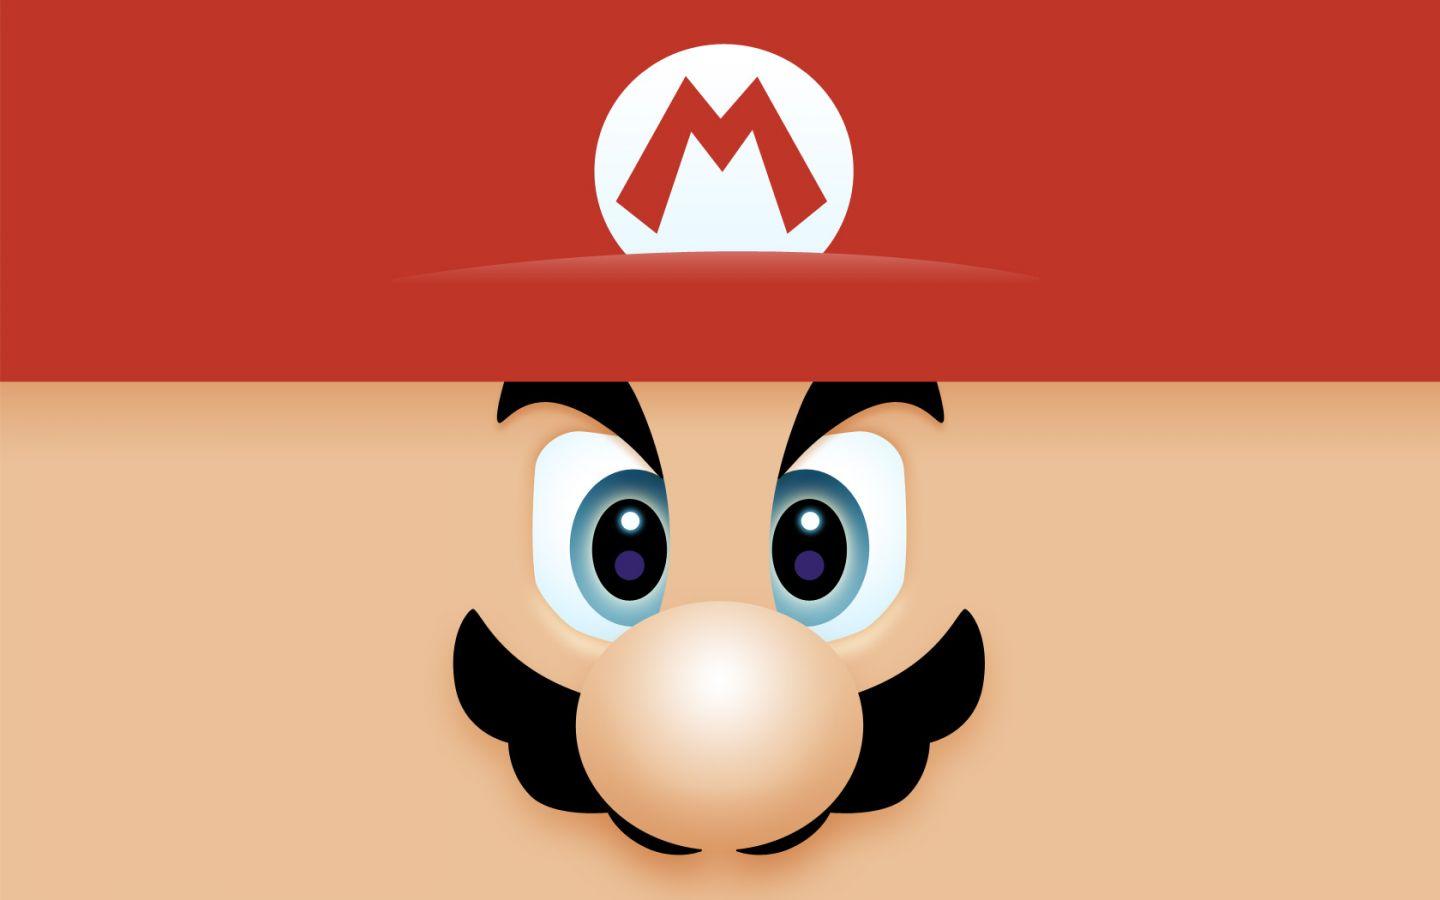 Mario Face Wallpaper 1440×900 Mario Wallpaper